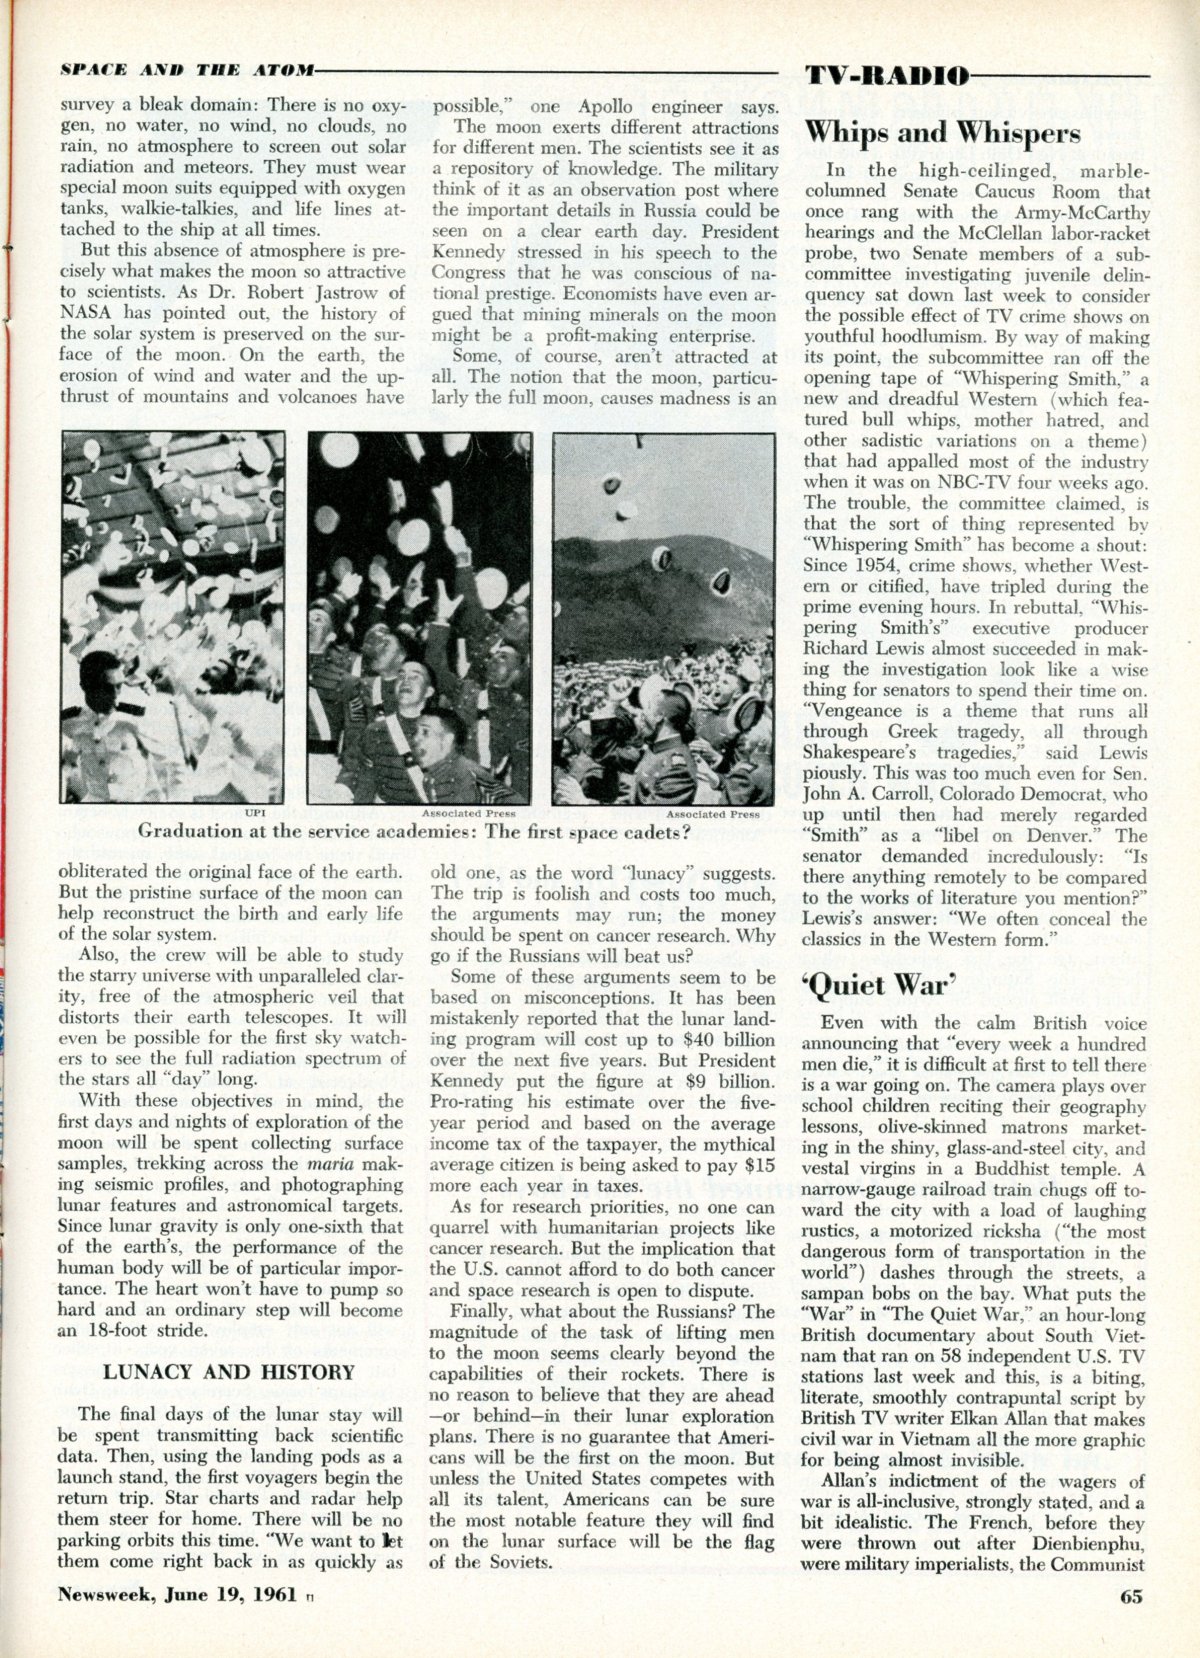 June 19 1961 pg 65